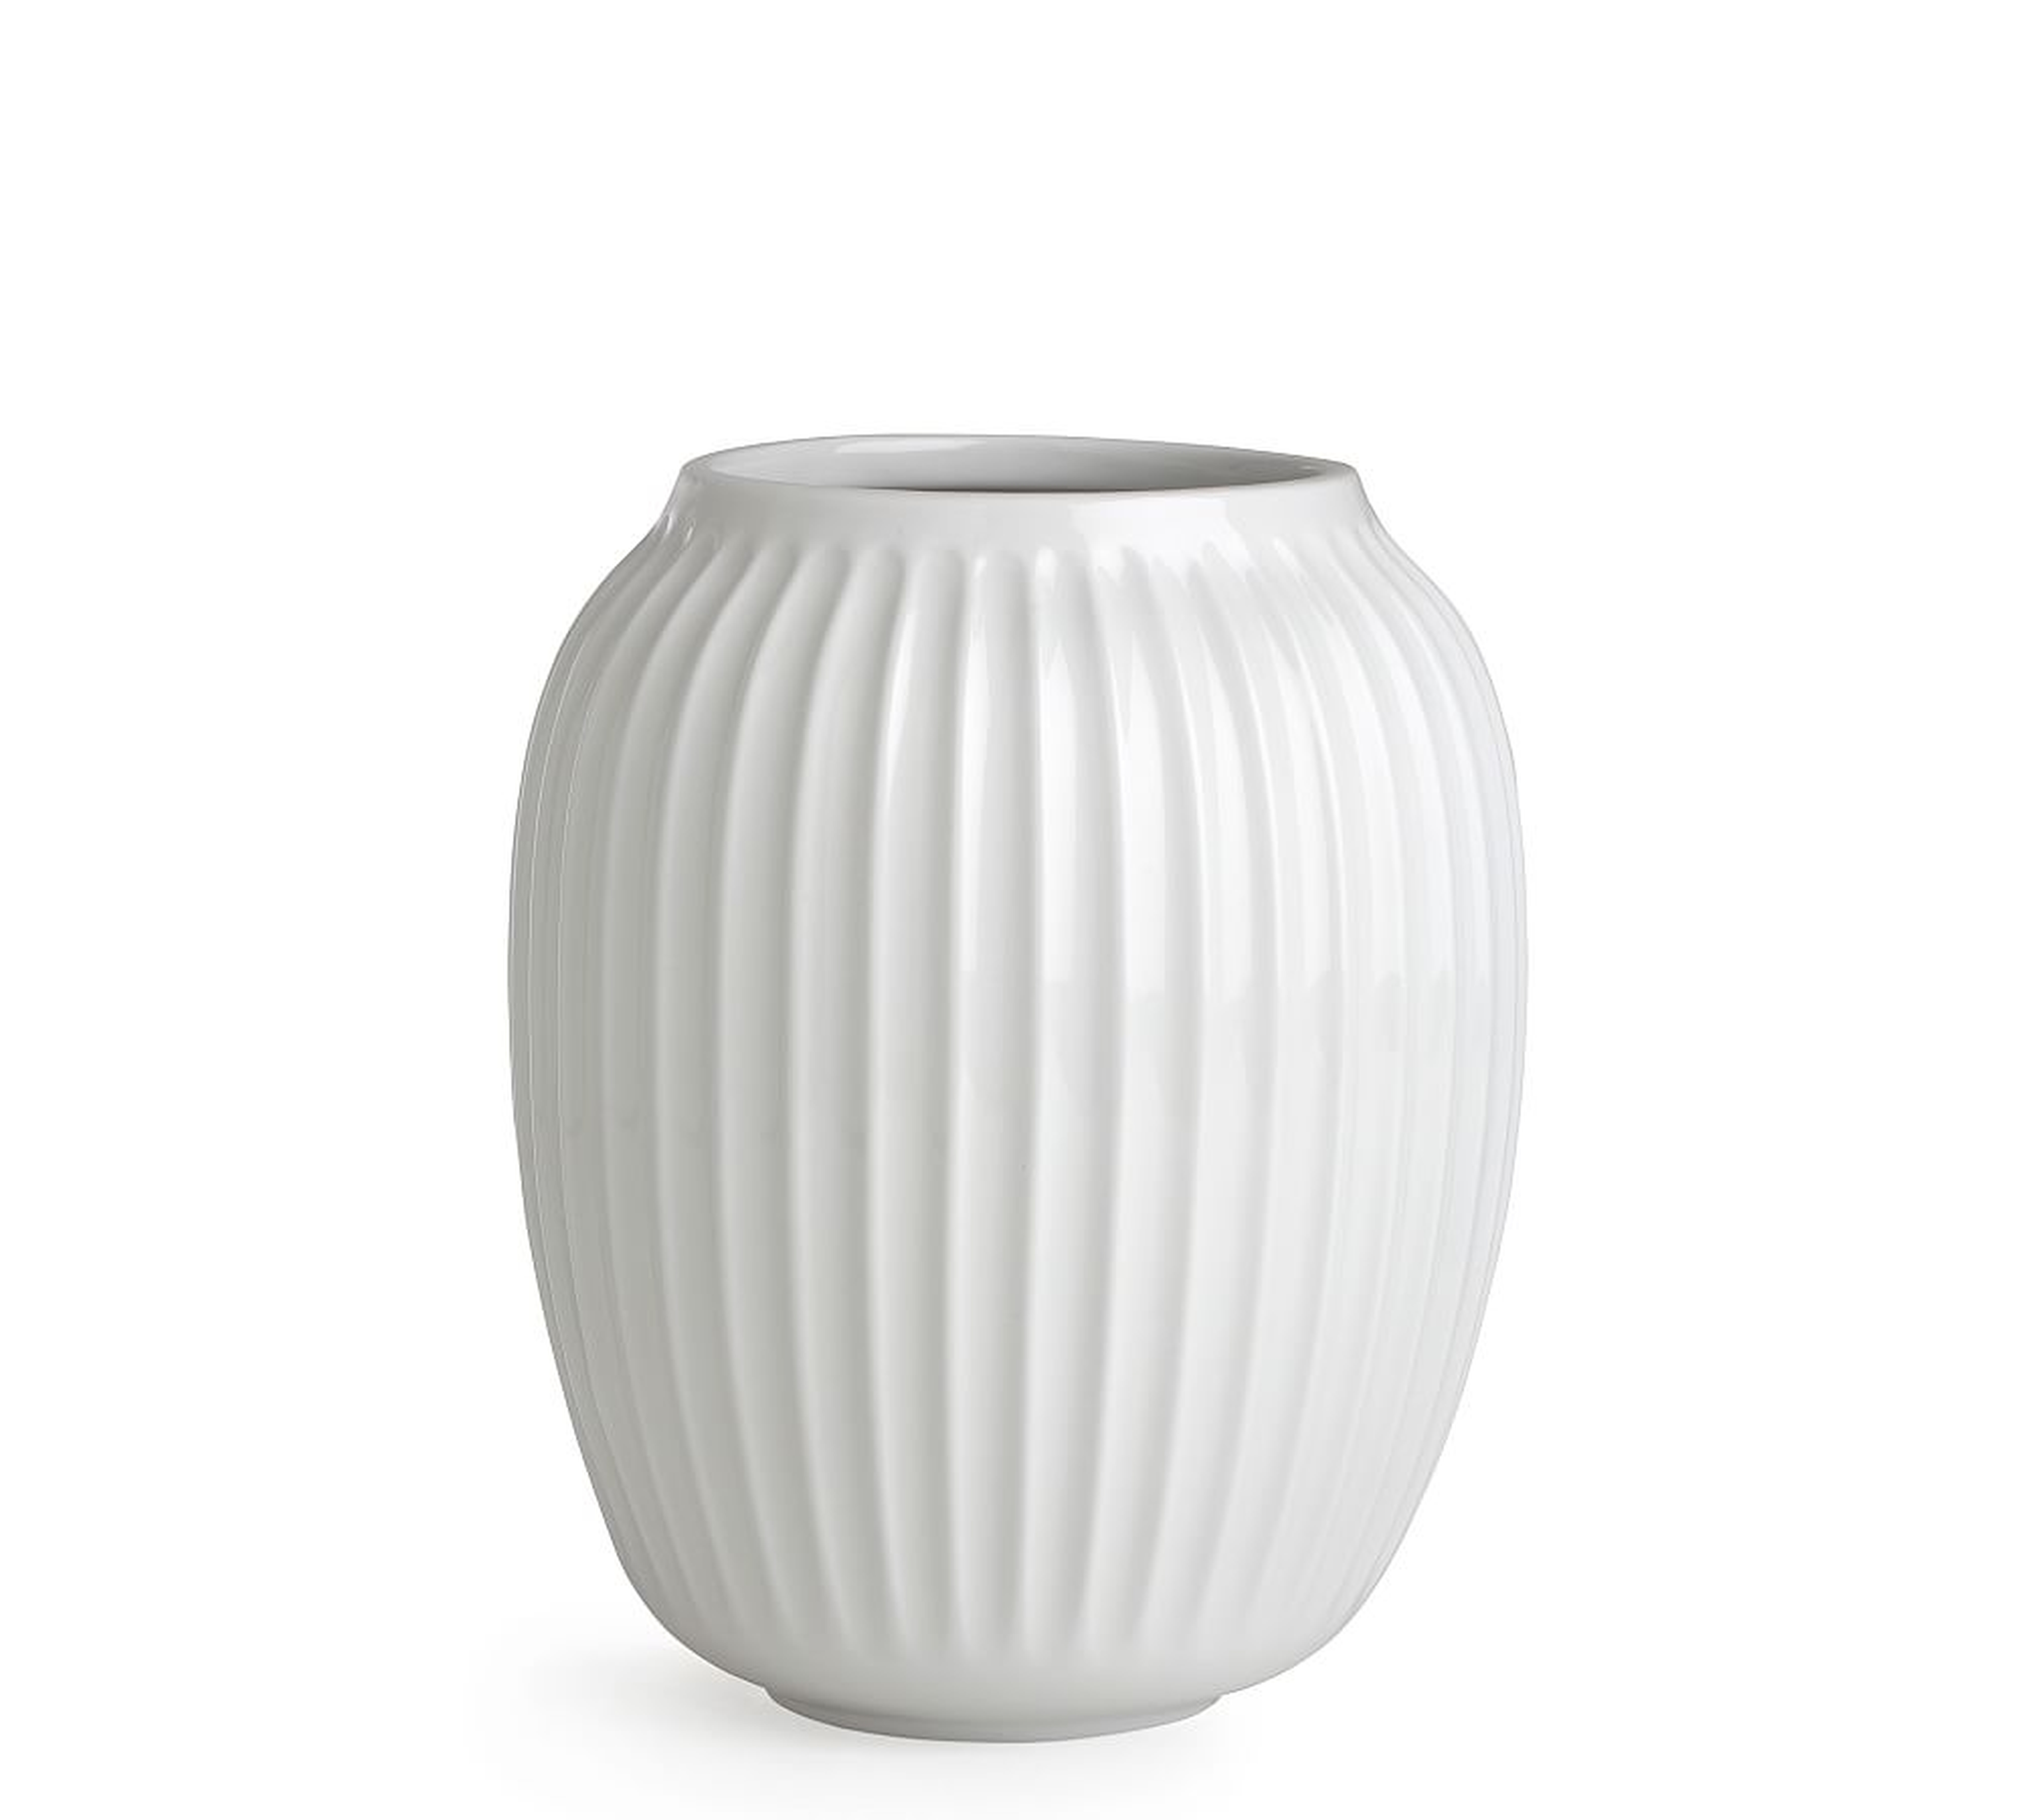 Kahler Hammershoi Vase, Small, White Porcelain - Pottery Barn